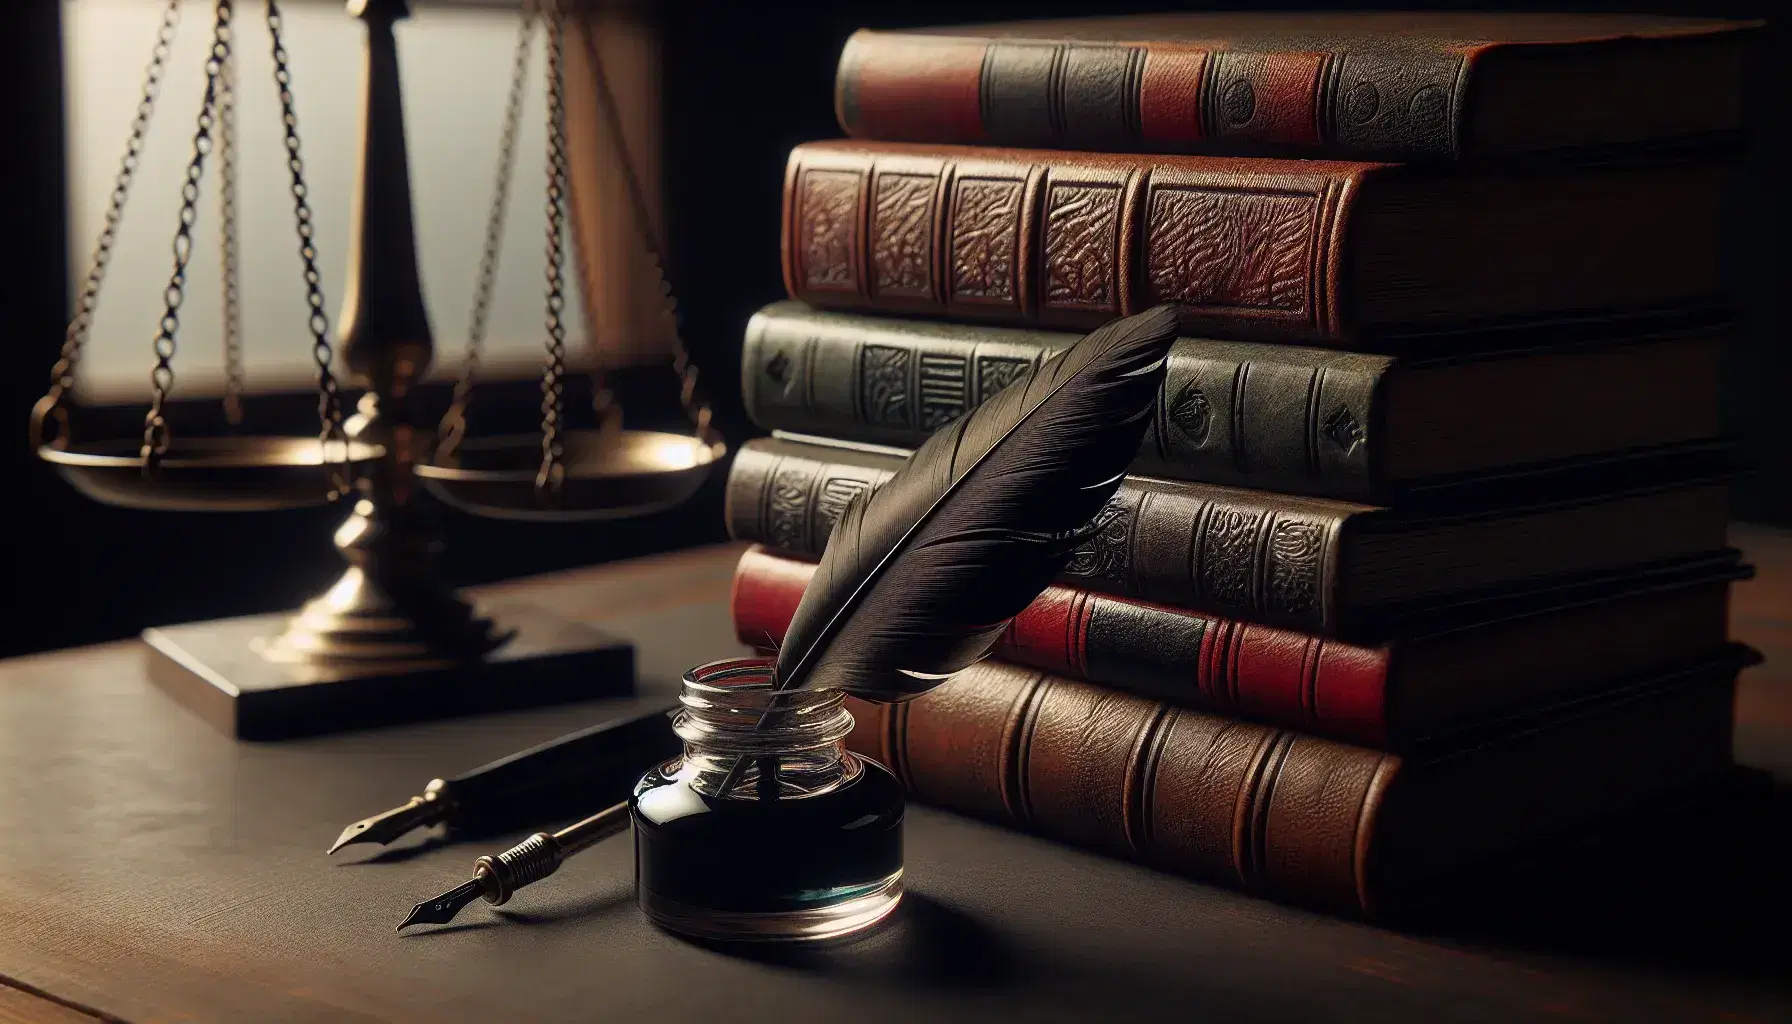 Pila de libros antiguos con tapas de cuero sobre mesa de madera oscura, pluma negra en tintero de cristal y balanza de justicia en el fondo.